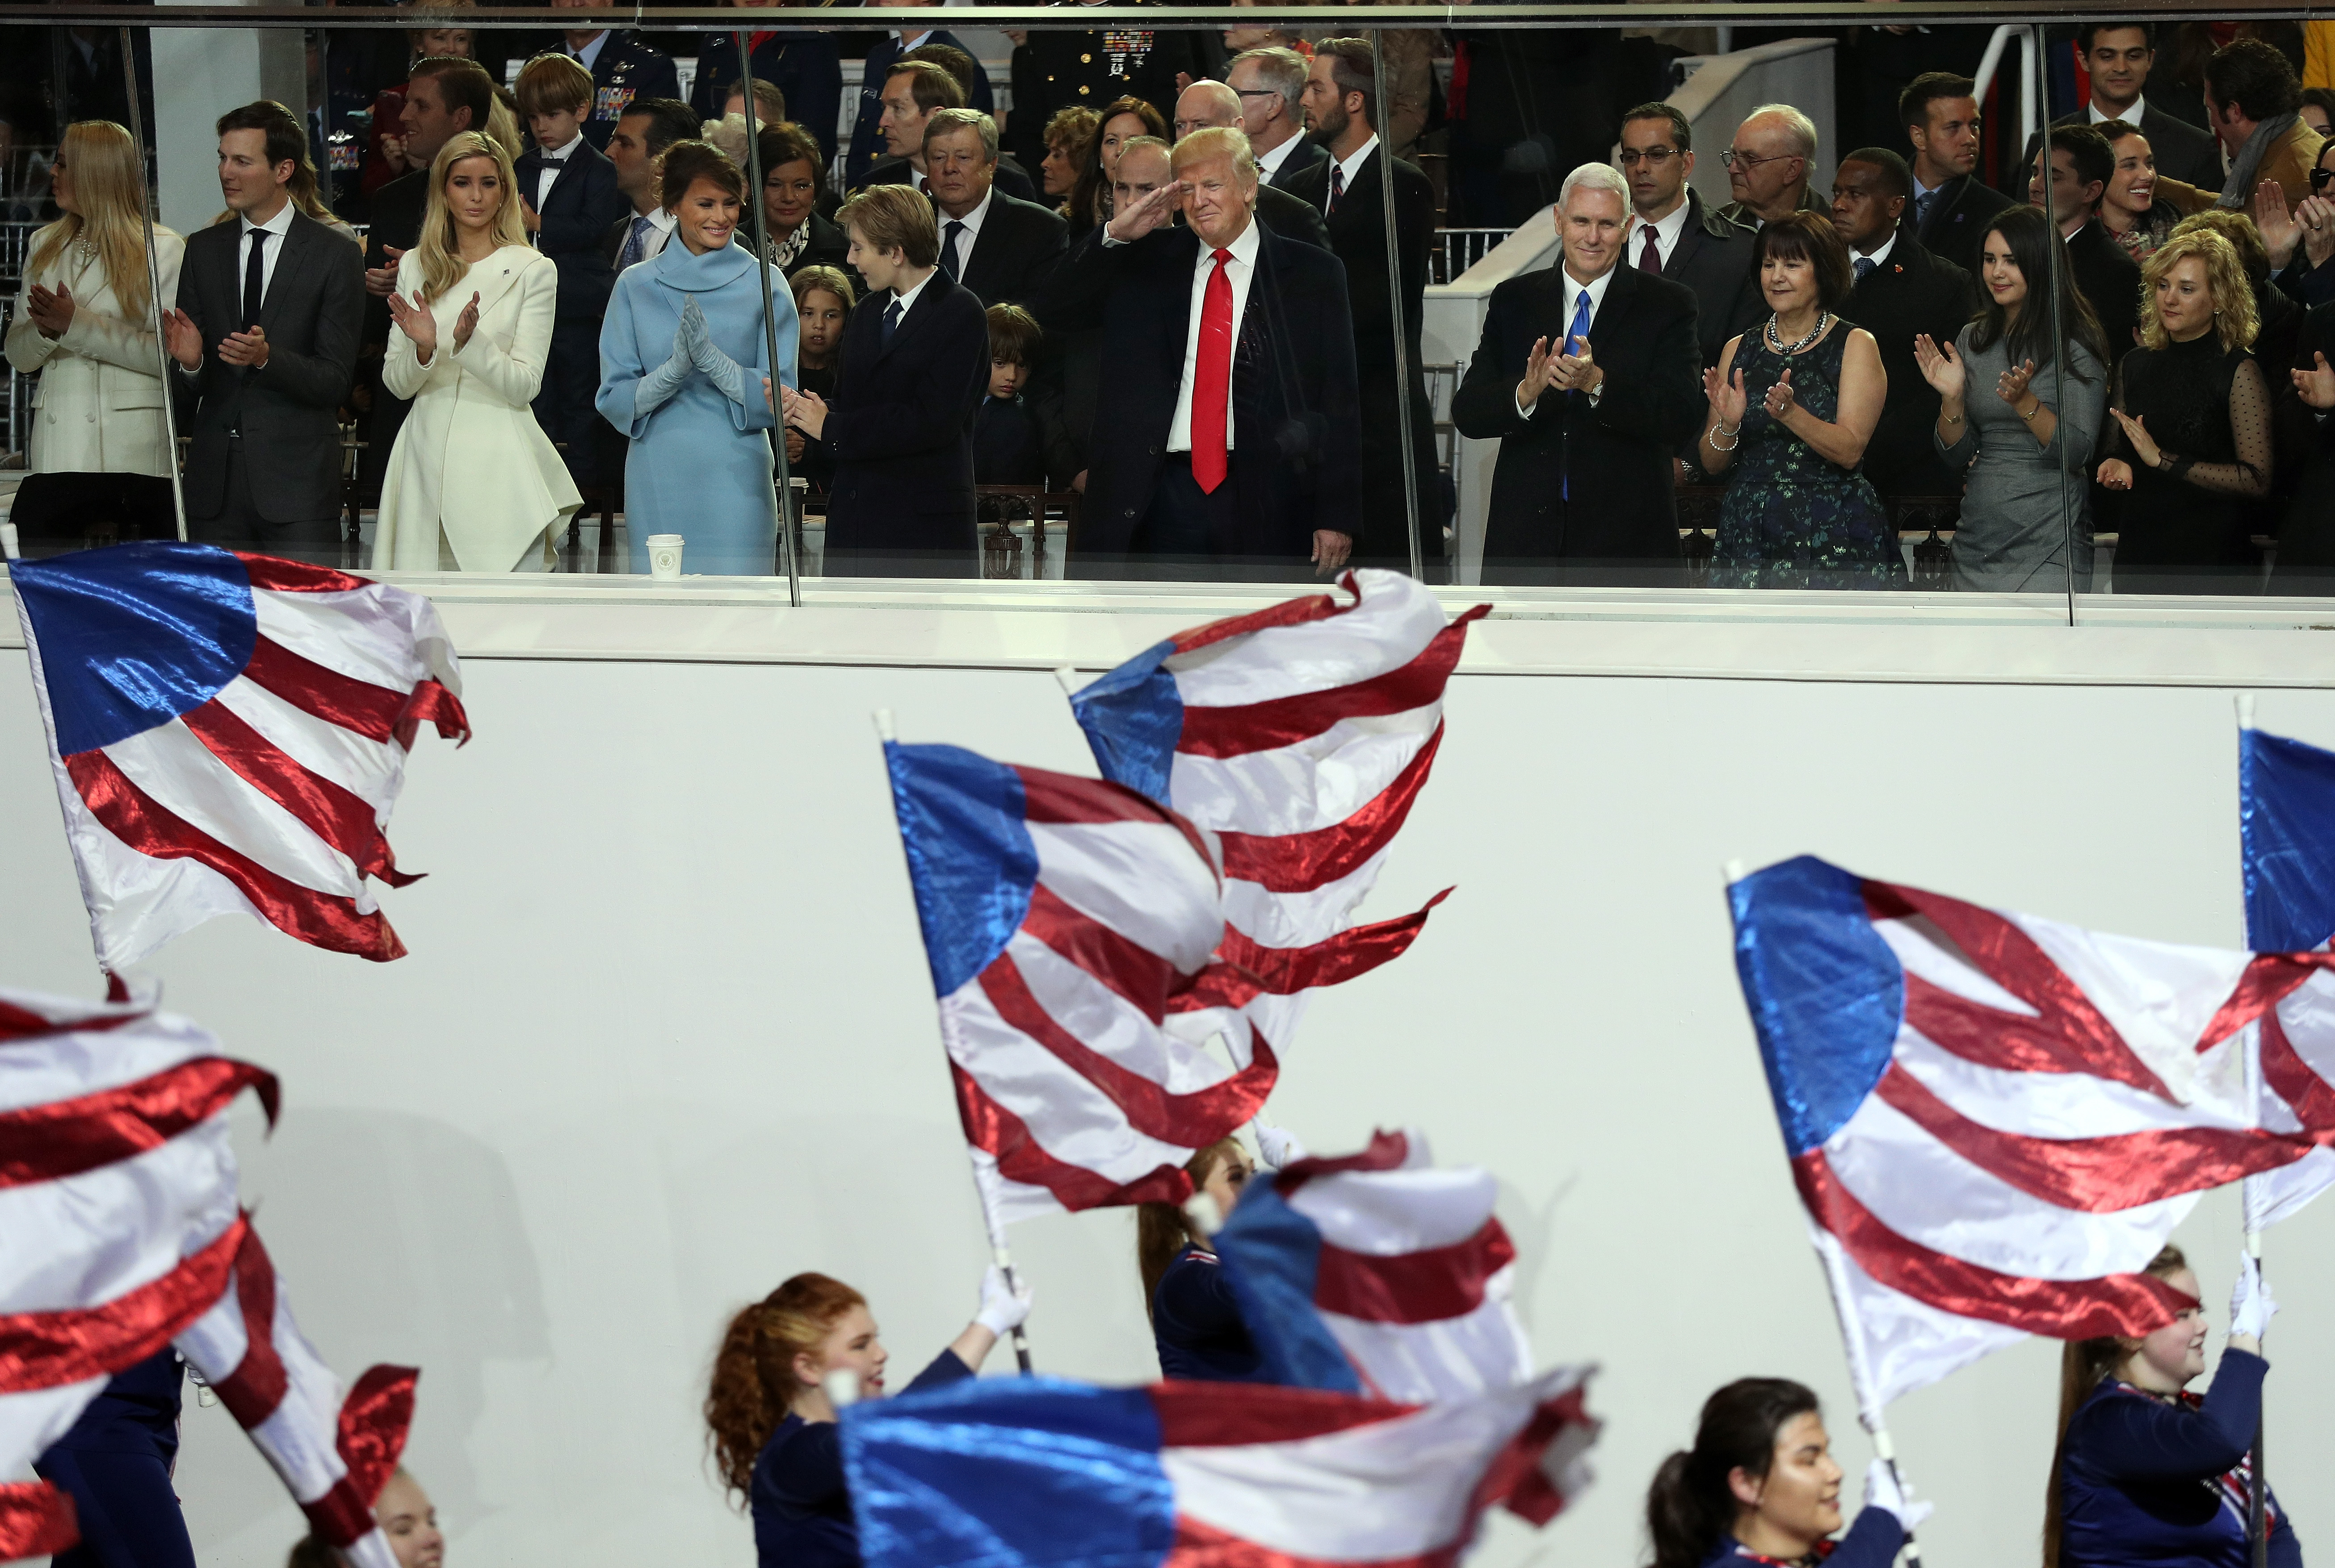 Además del presidente, el vicepresidente Mike Pence (derecha) y su esposa presenciaron la celebración. FOTO: PATRICK SMITH / GETTY IMAGES